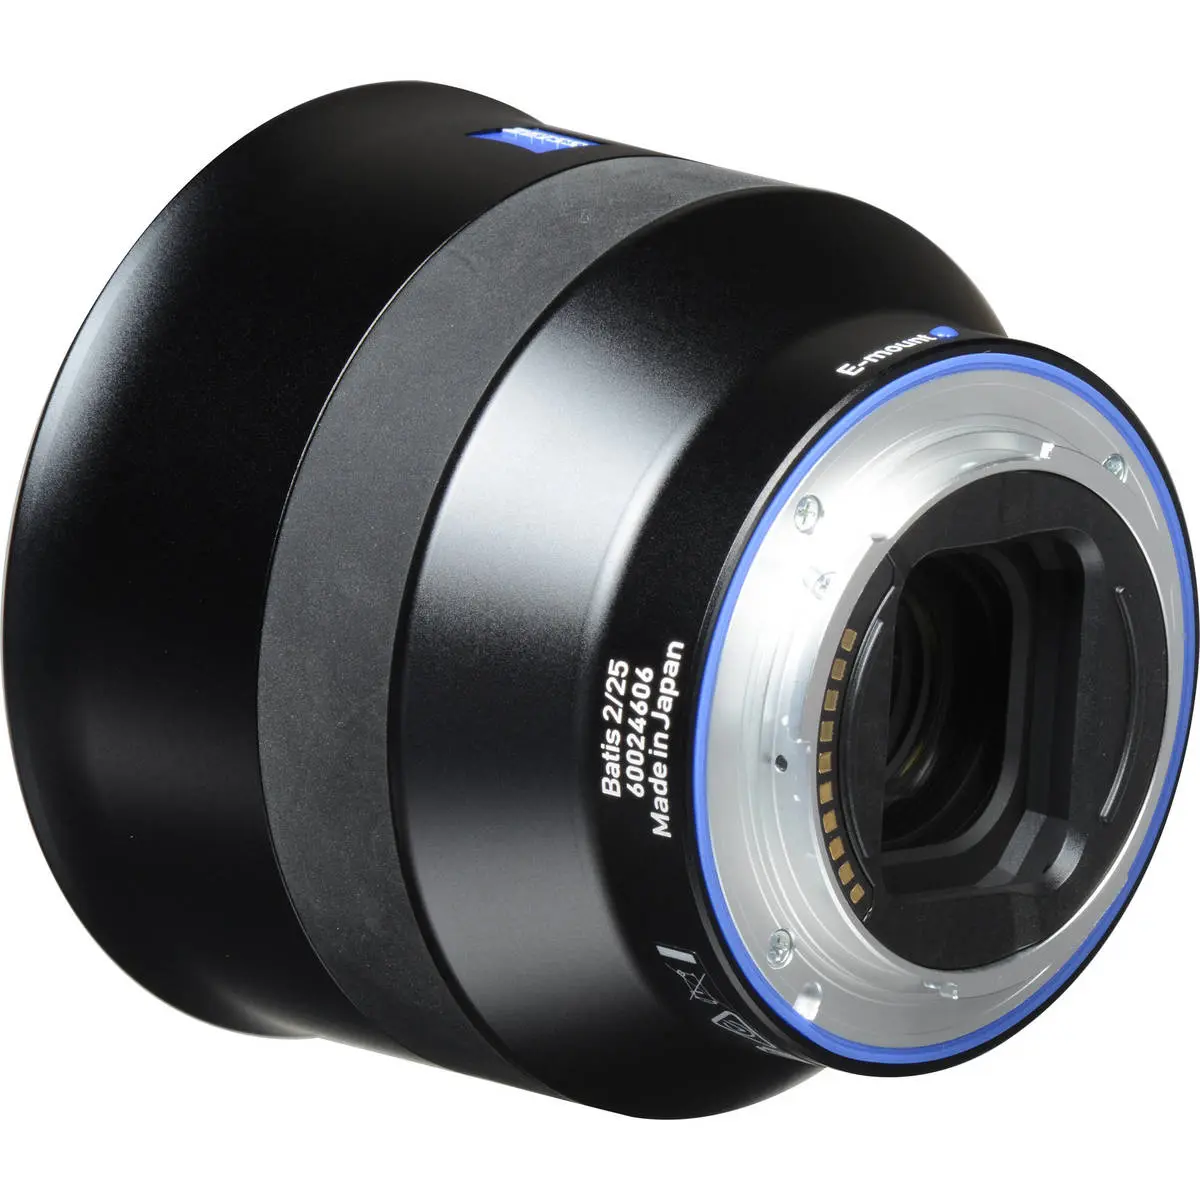 11. Carl Zeiss Batis 25mm F2 for Sony E mount Lens